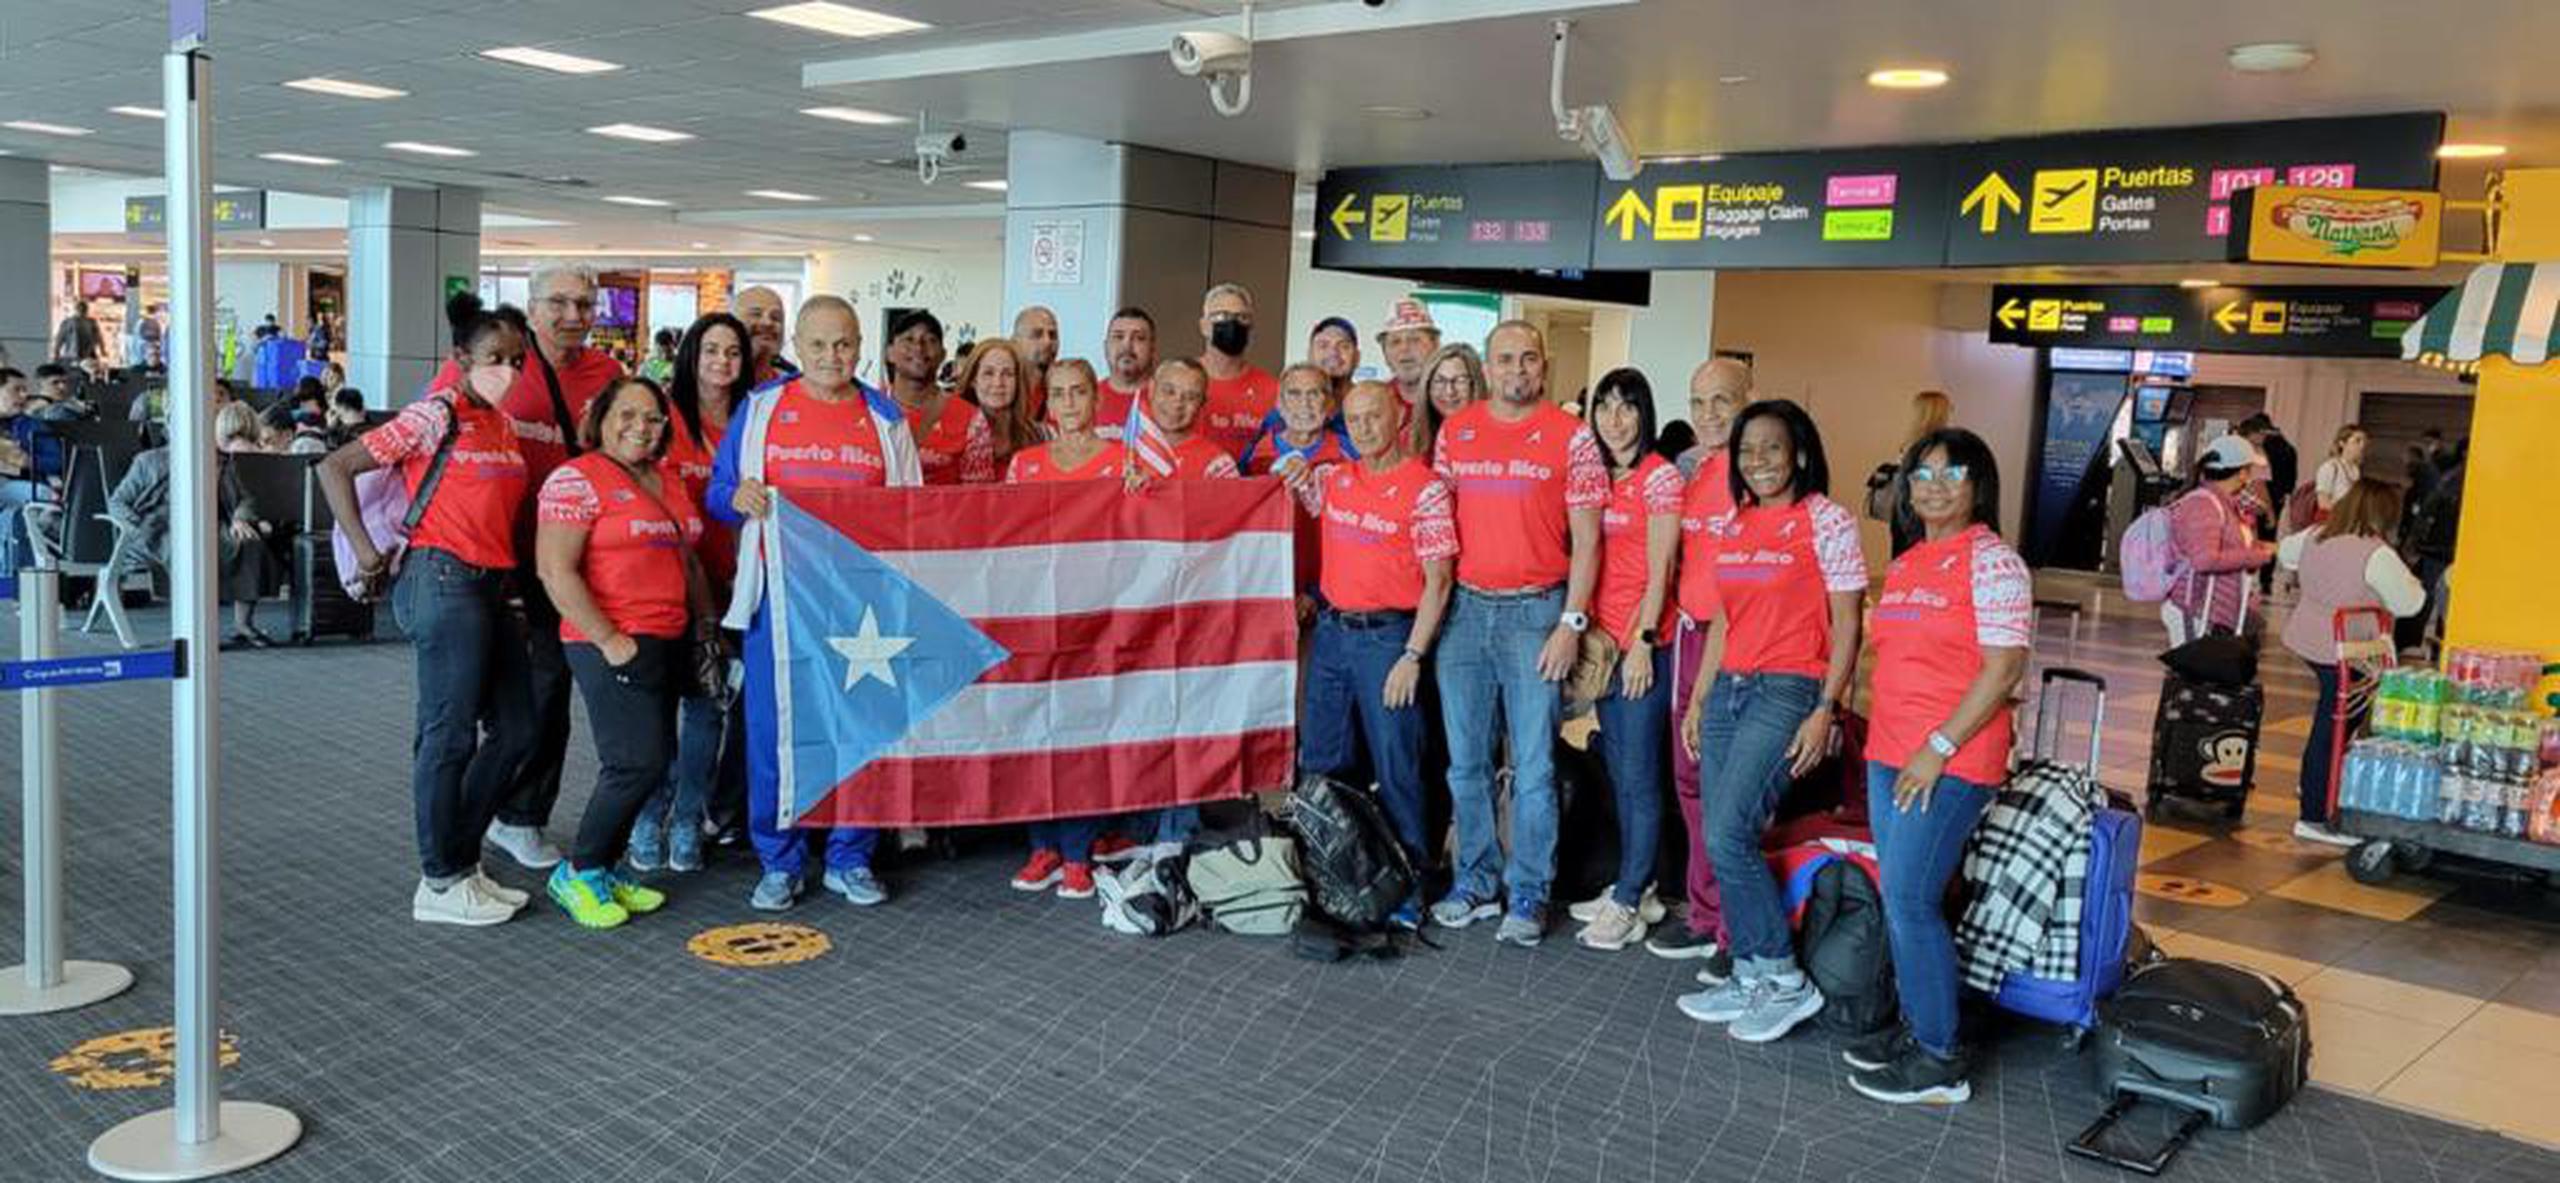 La delegación de 37 atletas masters de Puerto Rico logró 71 medallas en el zona Centroamericano en Costa Rica.